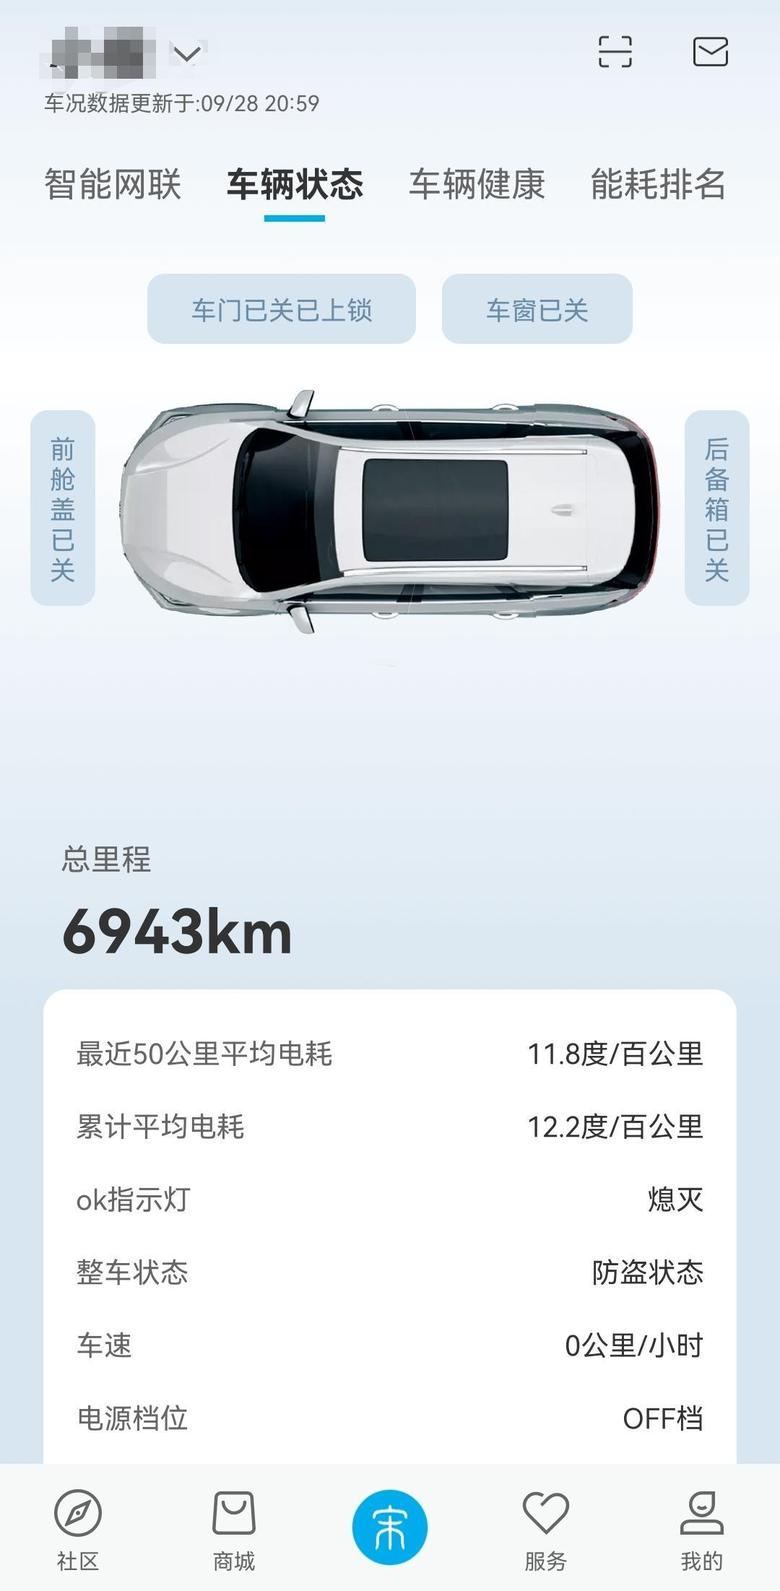 宋plus ev所在城市:北京车型:宋PLUSEV能耗情况:最近五十公里11.8满电或满箱油续航:满电表显505公里，实际264公里+表显下降229公里?，维持下去破505很轻松你自己的驾驶小技巧:第一，减少急加速、急减速保持适当车距第二，山区可以ECO+最大回馈，下坡好给力